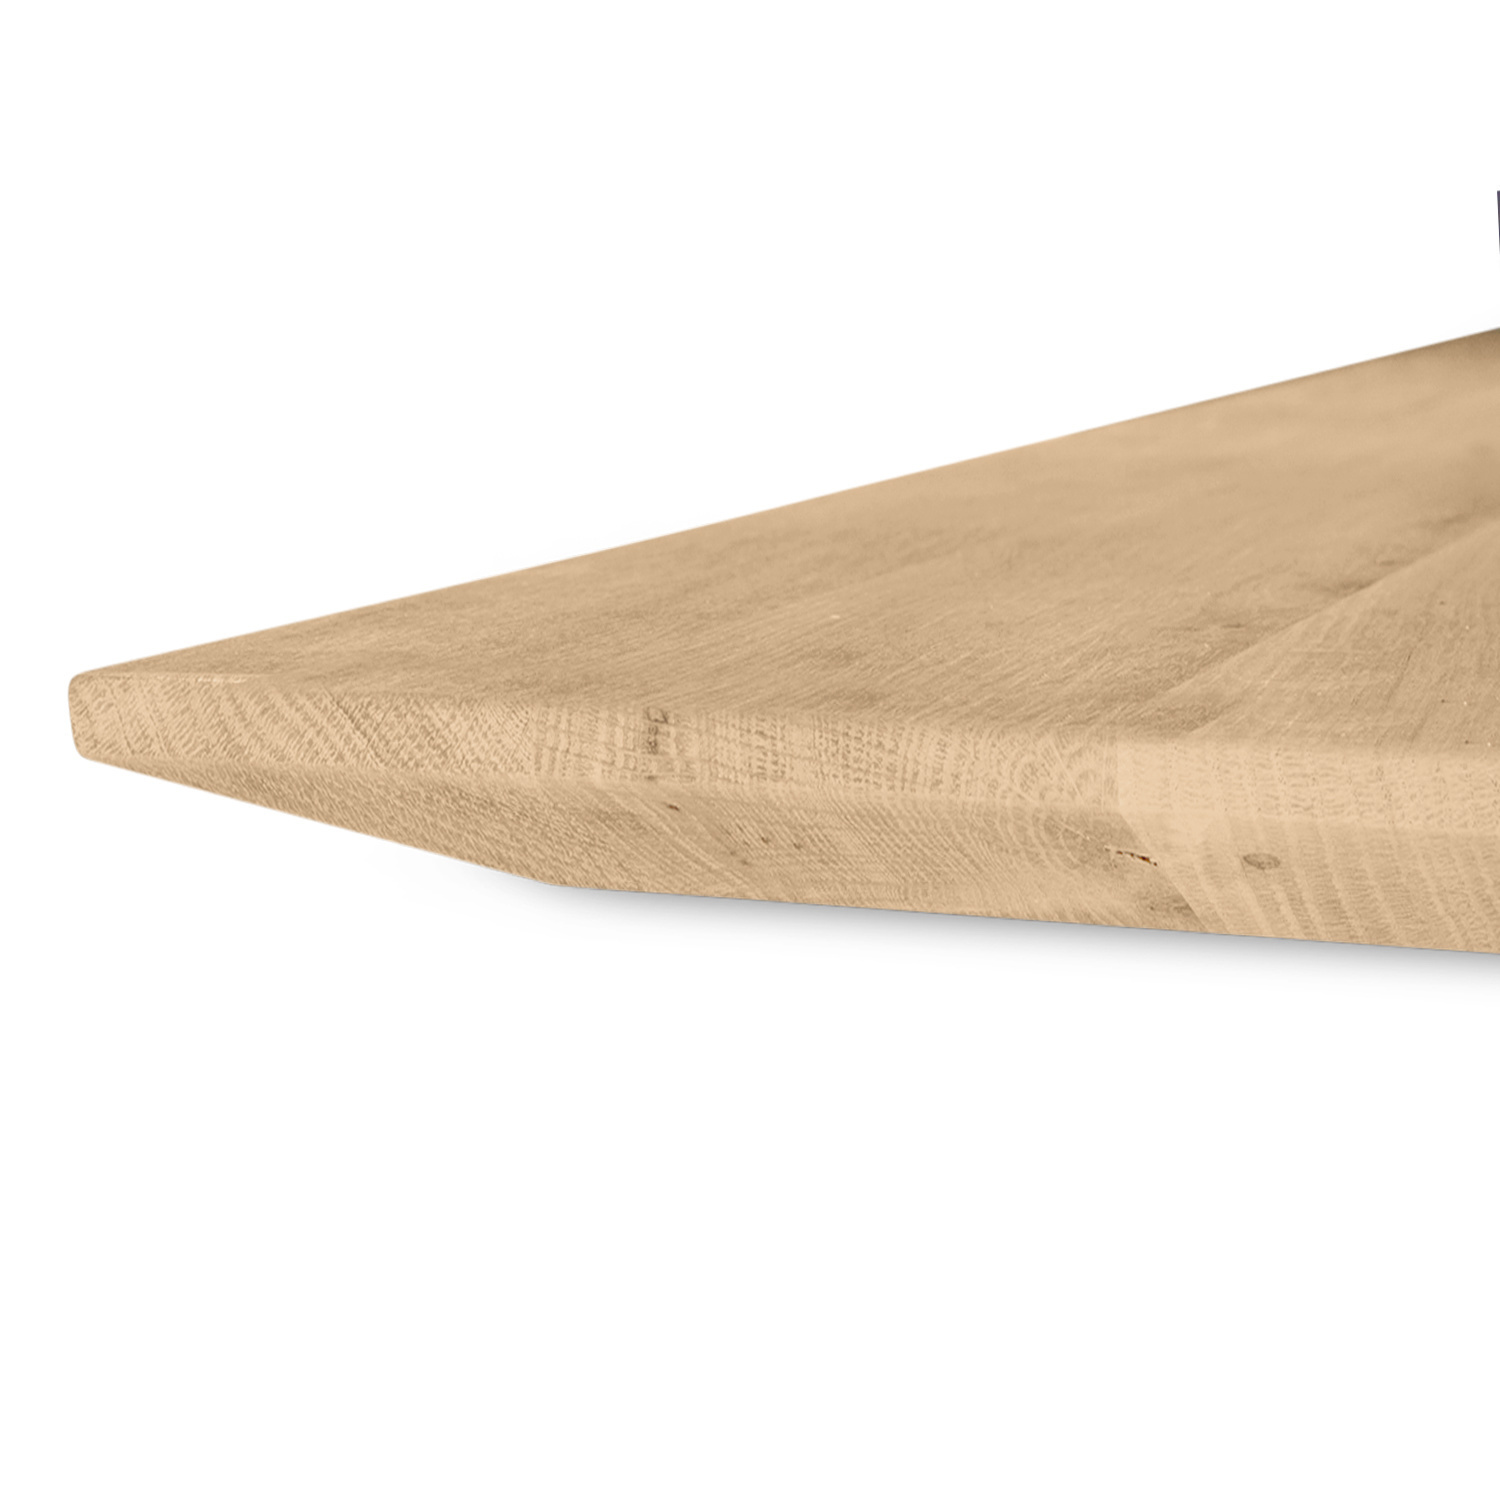  Tischplatte Eiche - Schweizer Kante - 2,7 cm dick (1-Schicht) - Breite Lamellen (10 - 12 cm breit) - Eichenholz rustikal - verleimt & künstlich getrocknet (HF 8-12%) - verschiedene Größen